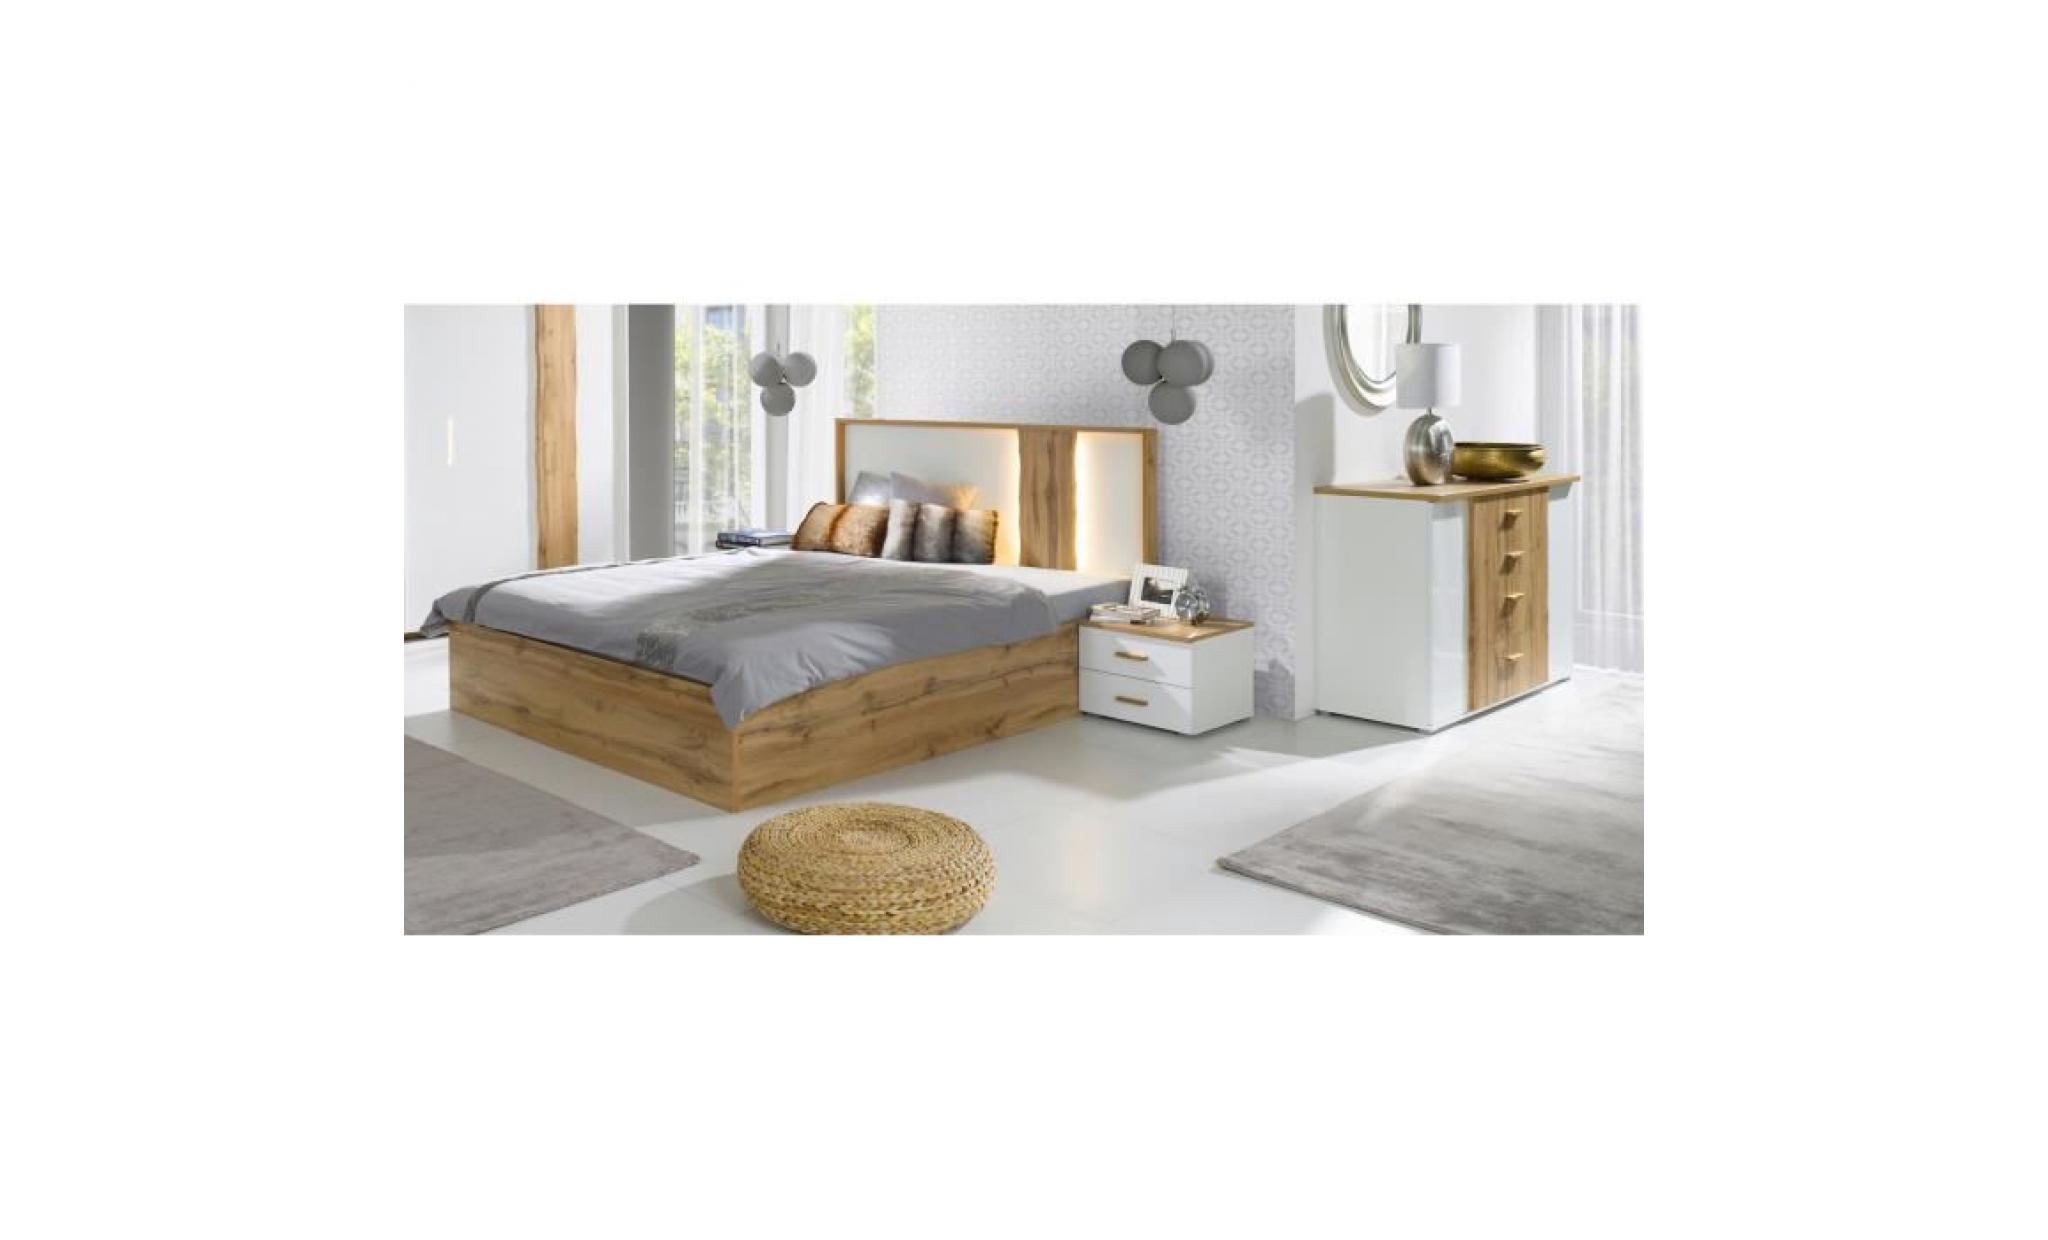 price factory chambre à coucher complète wood chêne et blanc. lit 160x200 cm + sommier + armoire en 200 cm + commode + 2 chevets pas cher